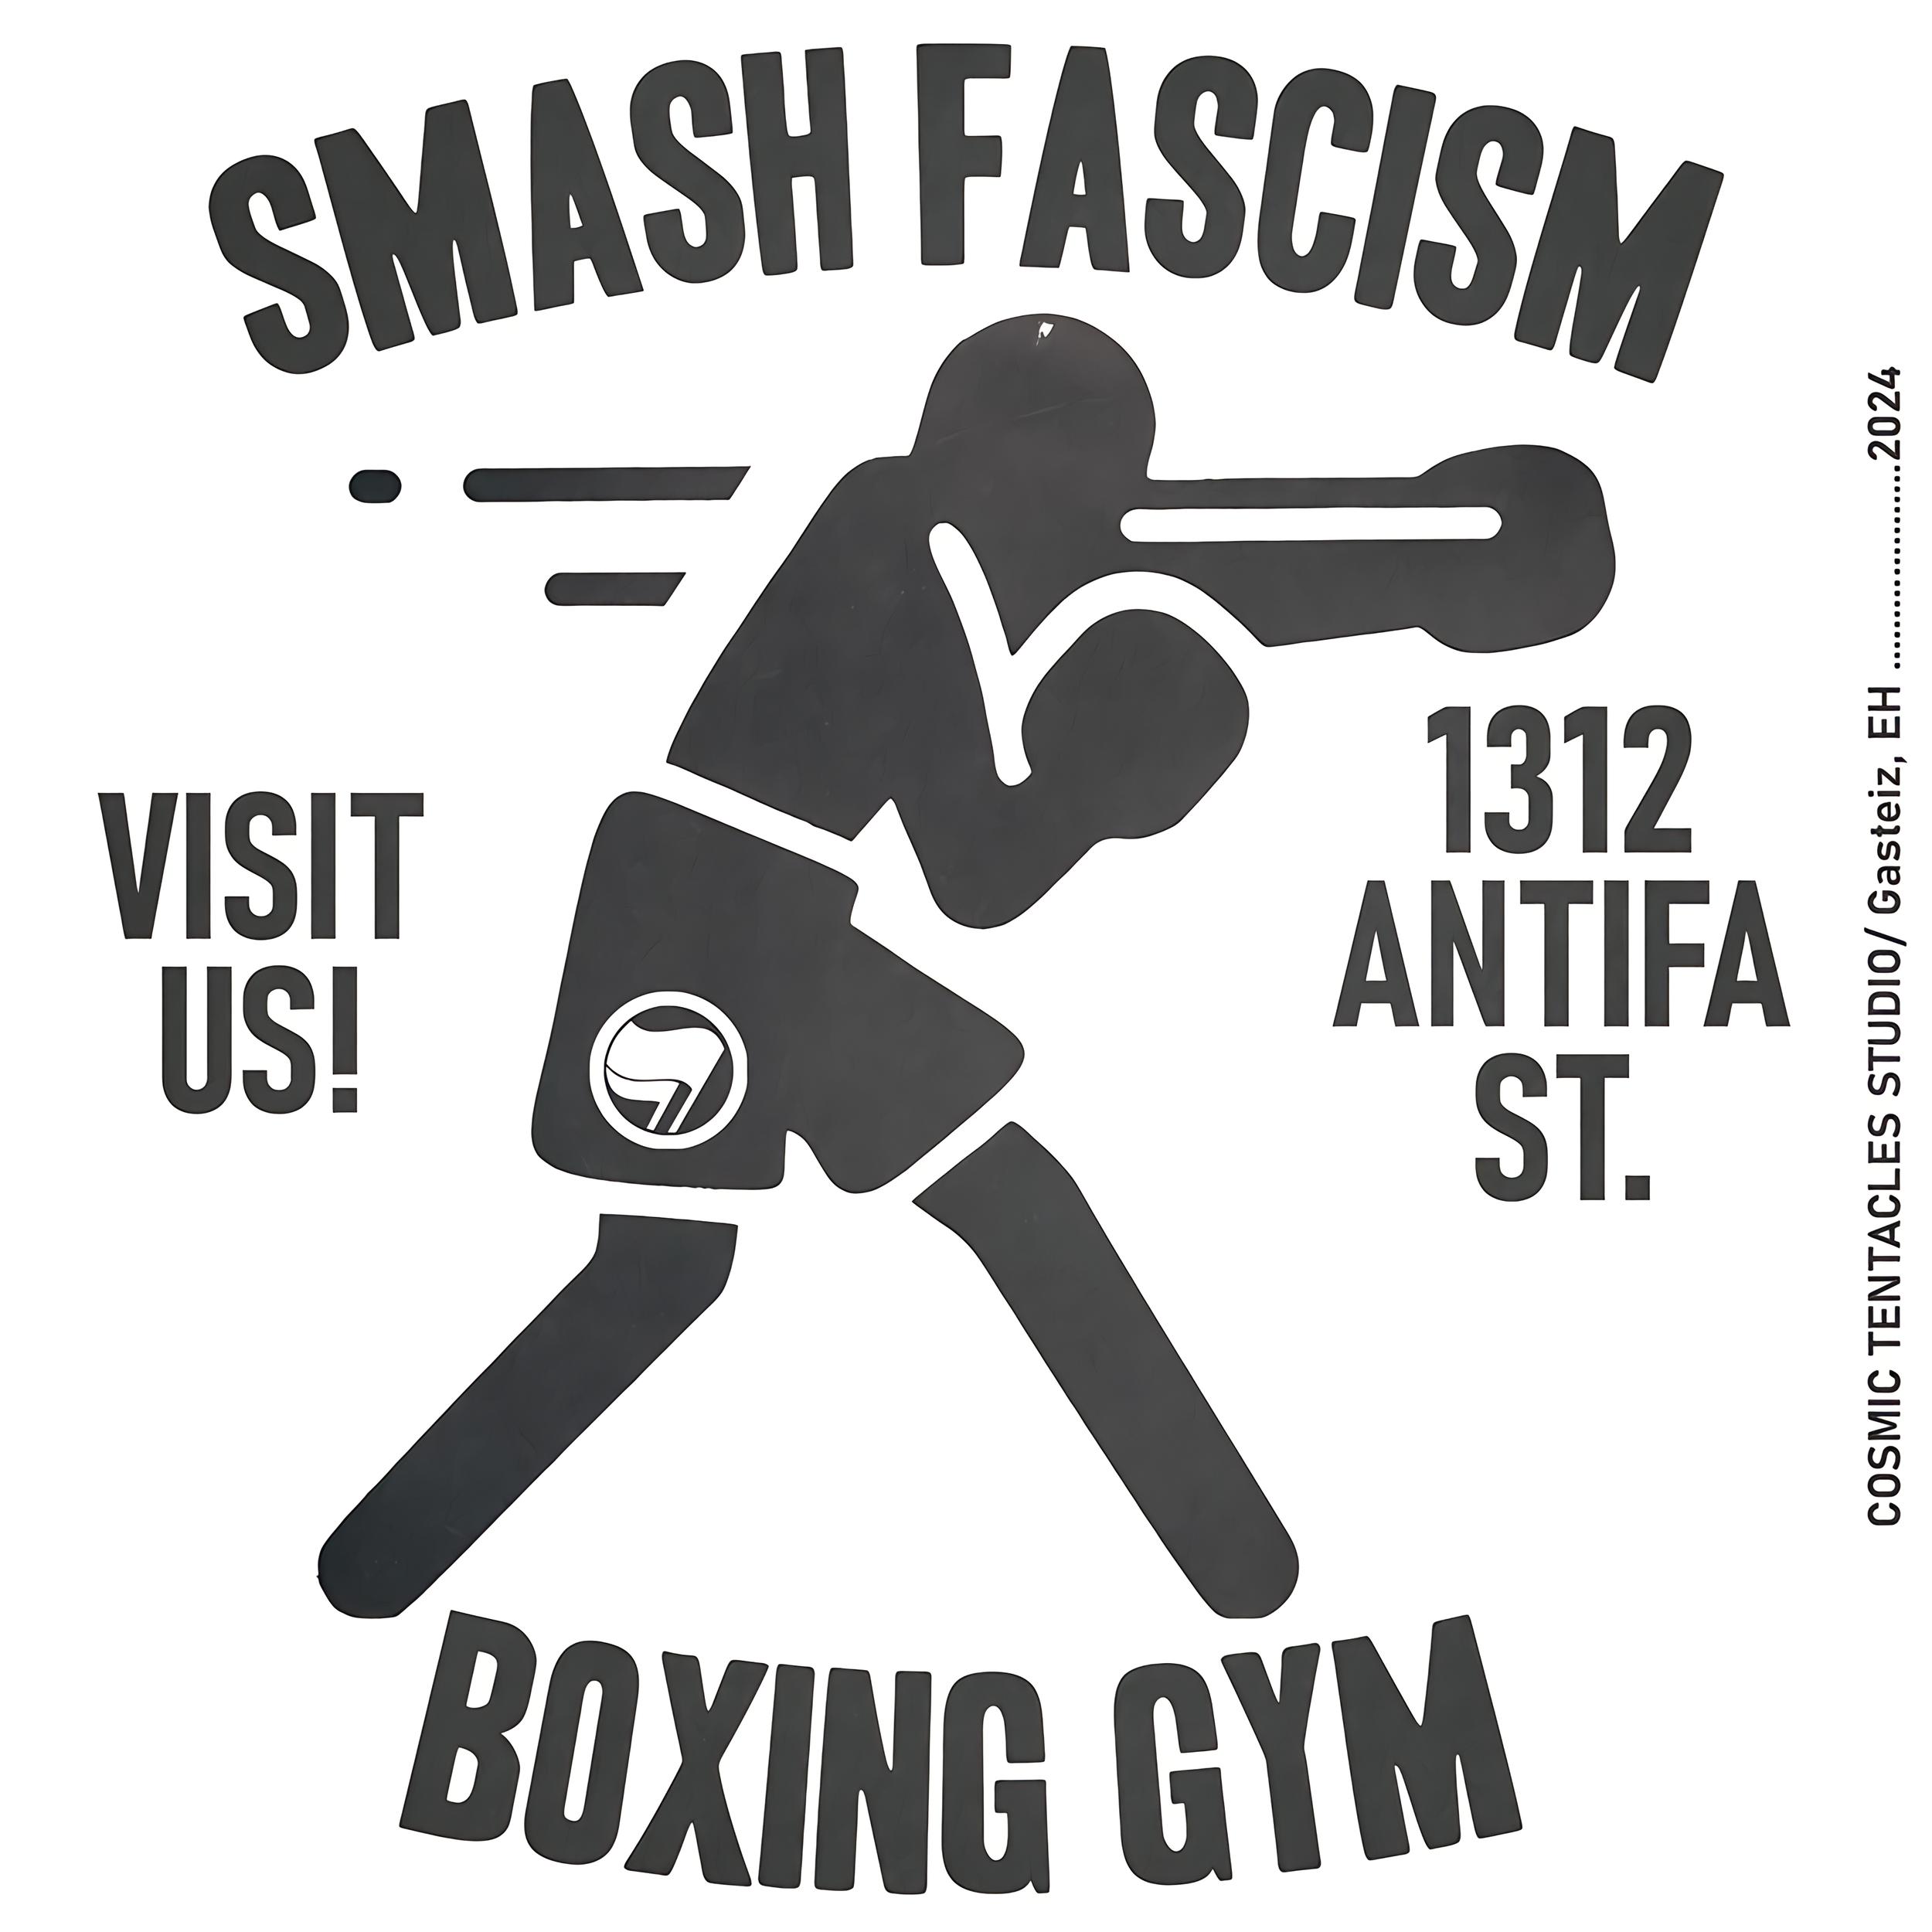 Smash fascism boxing gym